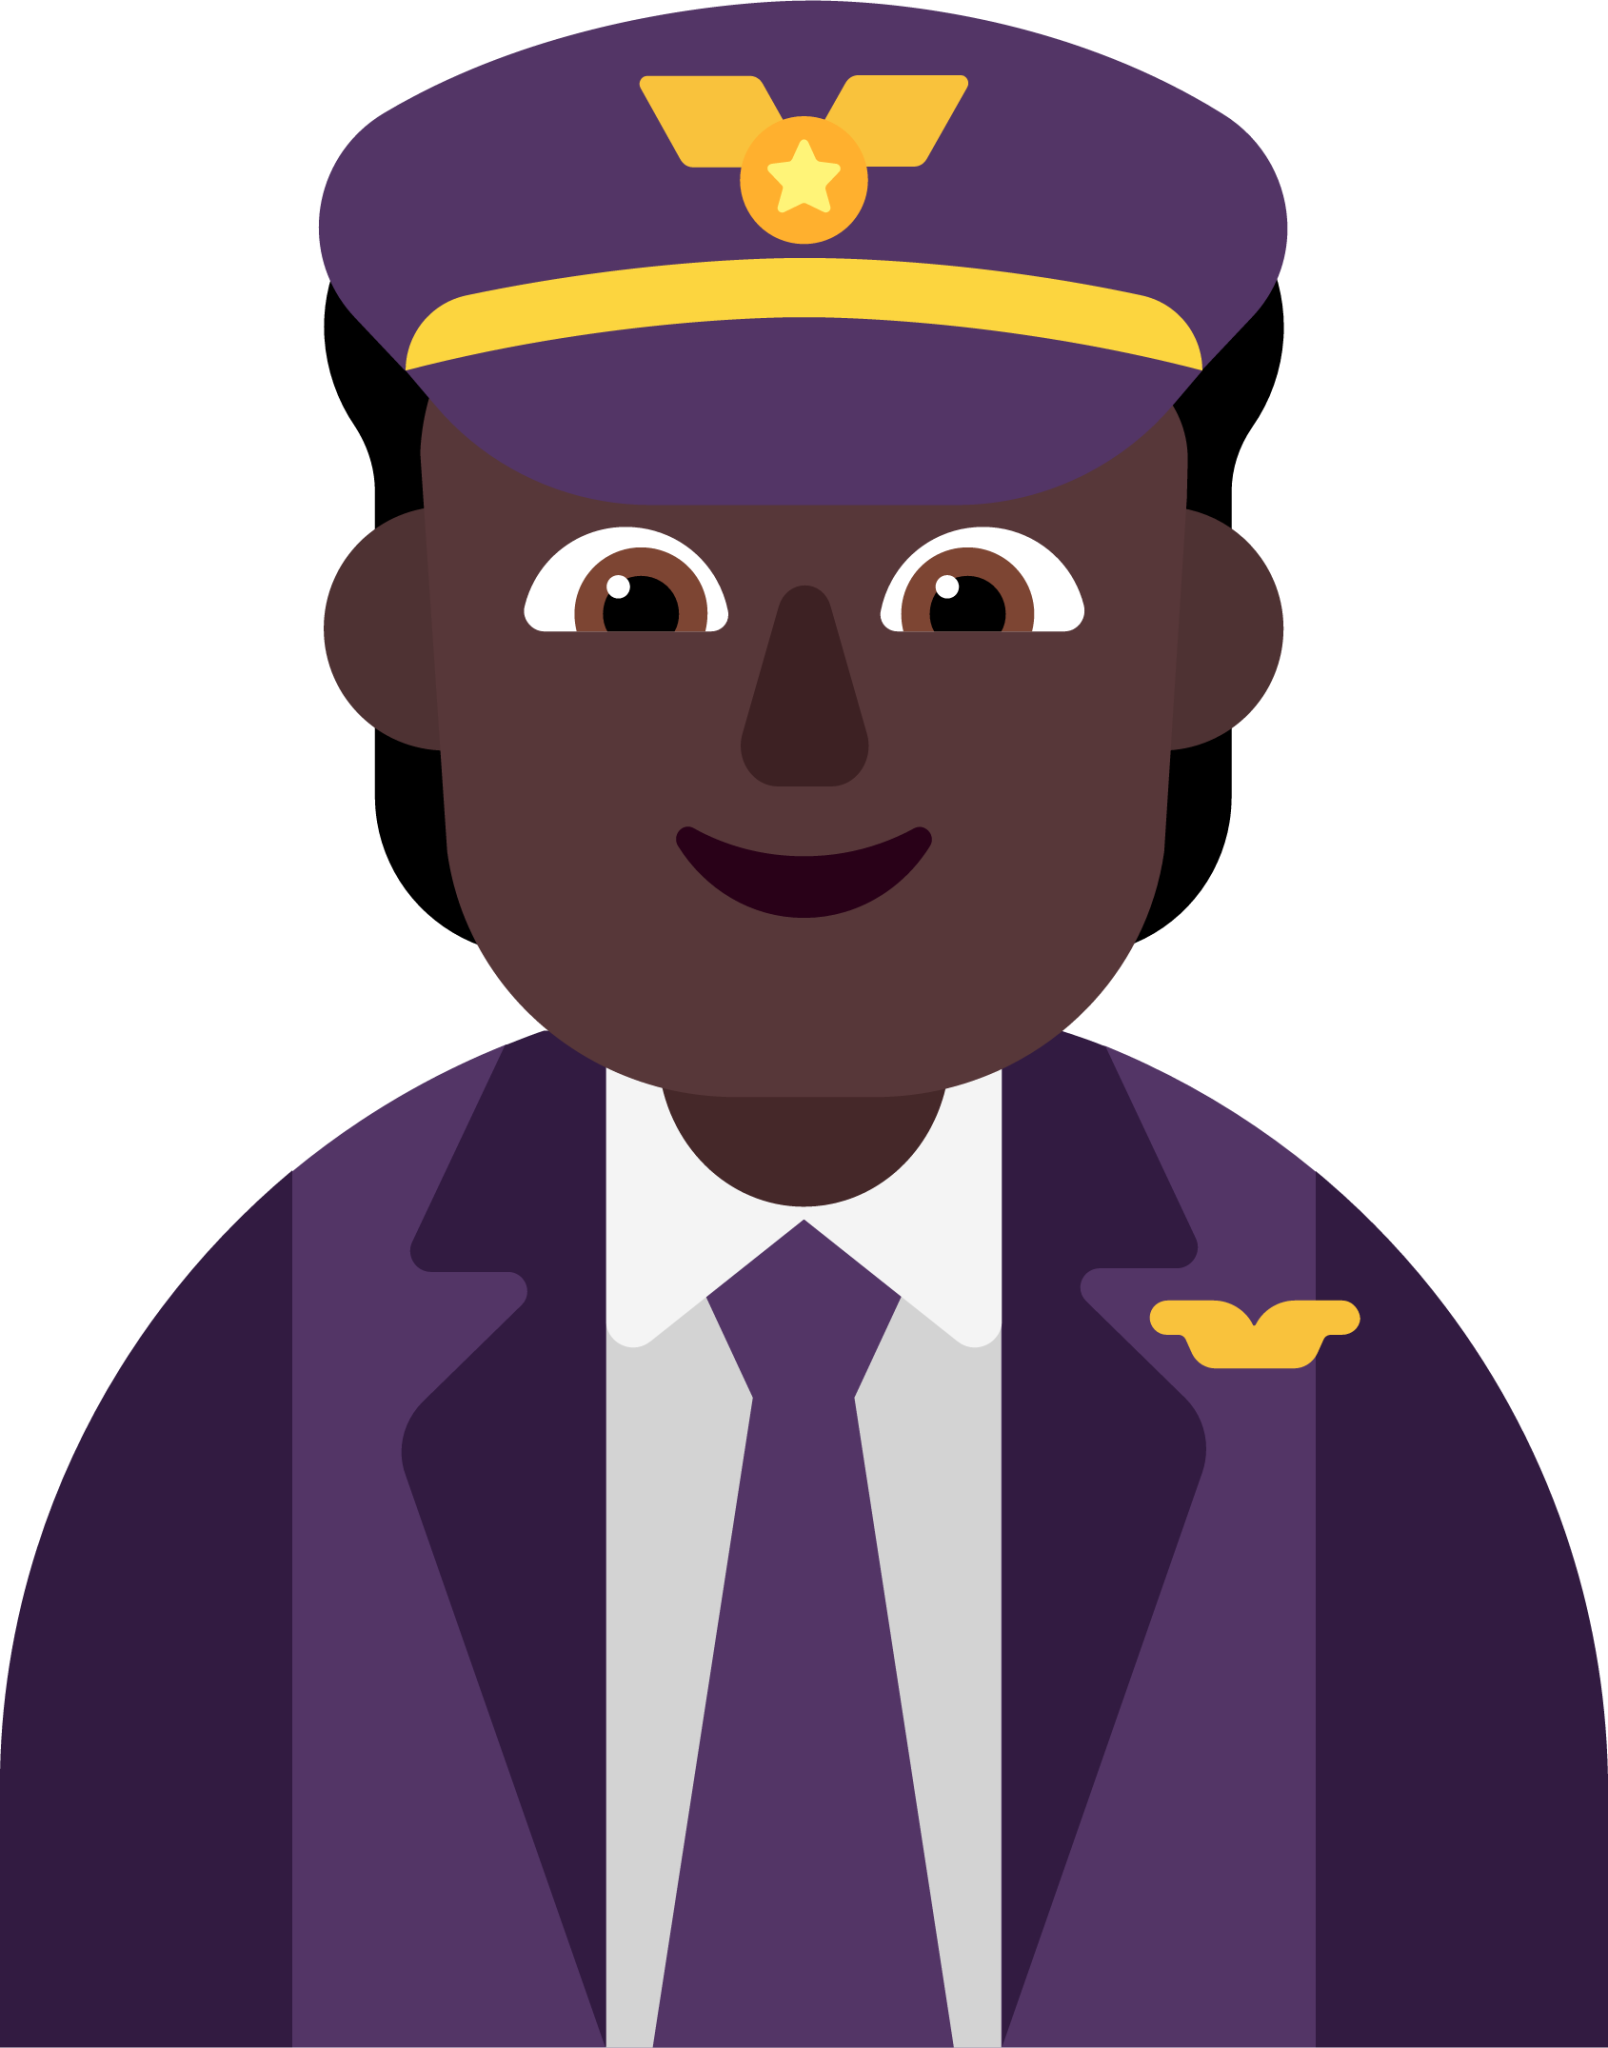 pilot dark emoji